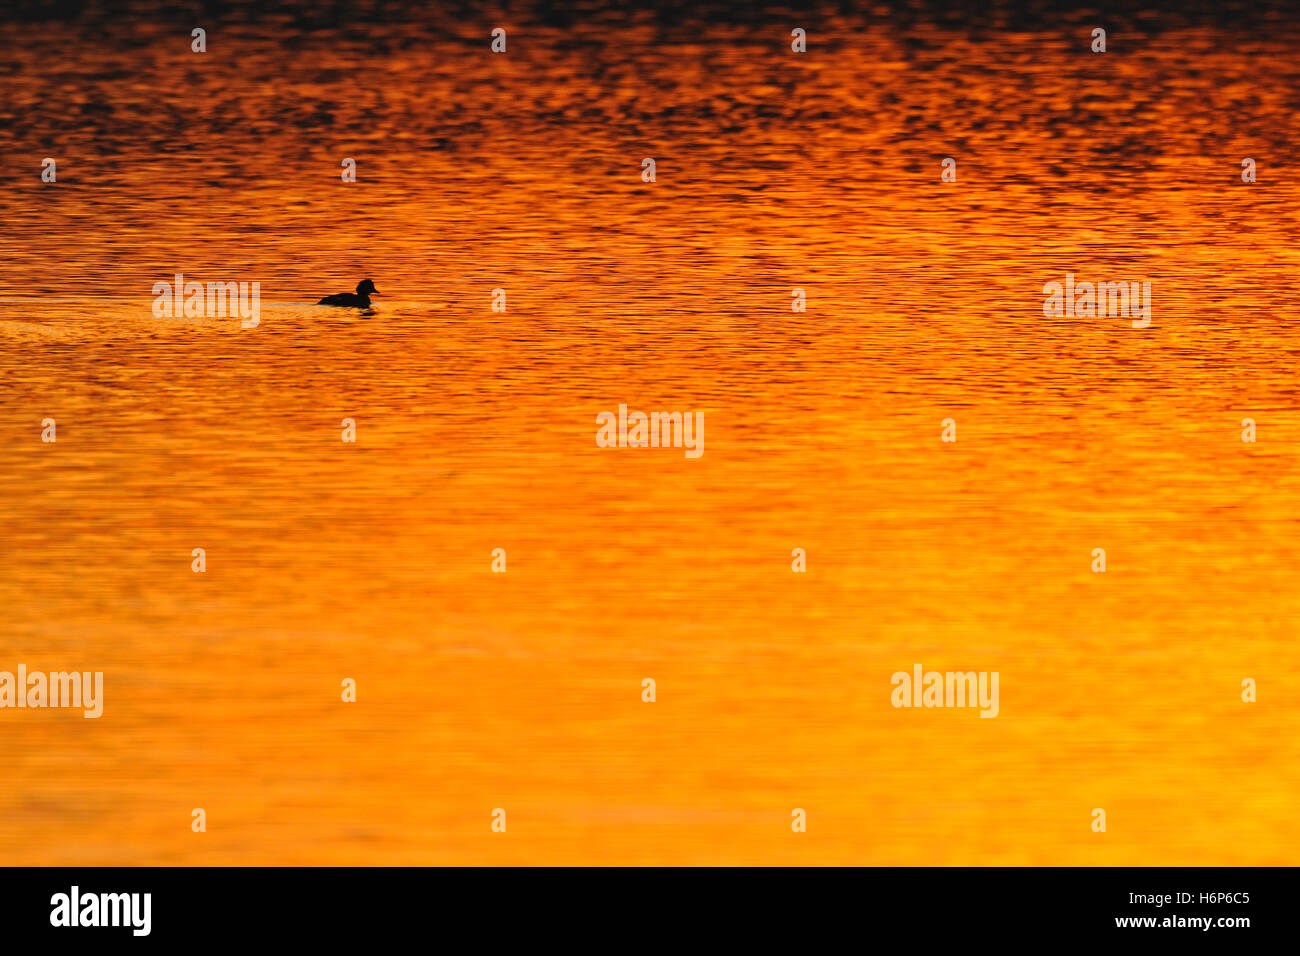 Reiherenten (Aythya Fuligula) schwimmen am See, Silhouette auf Ferne, Orange-rote Hintergrundbeleuchtung von Sonnenuntergang widerspiegelt. Stockfoto